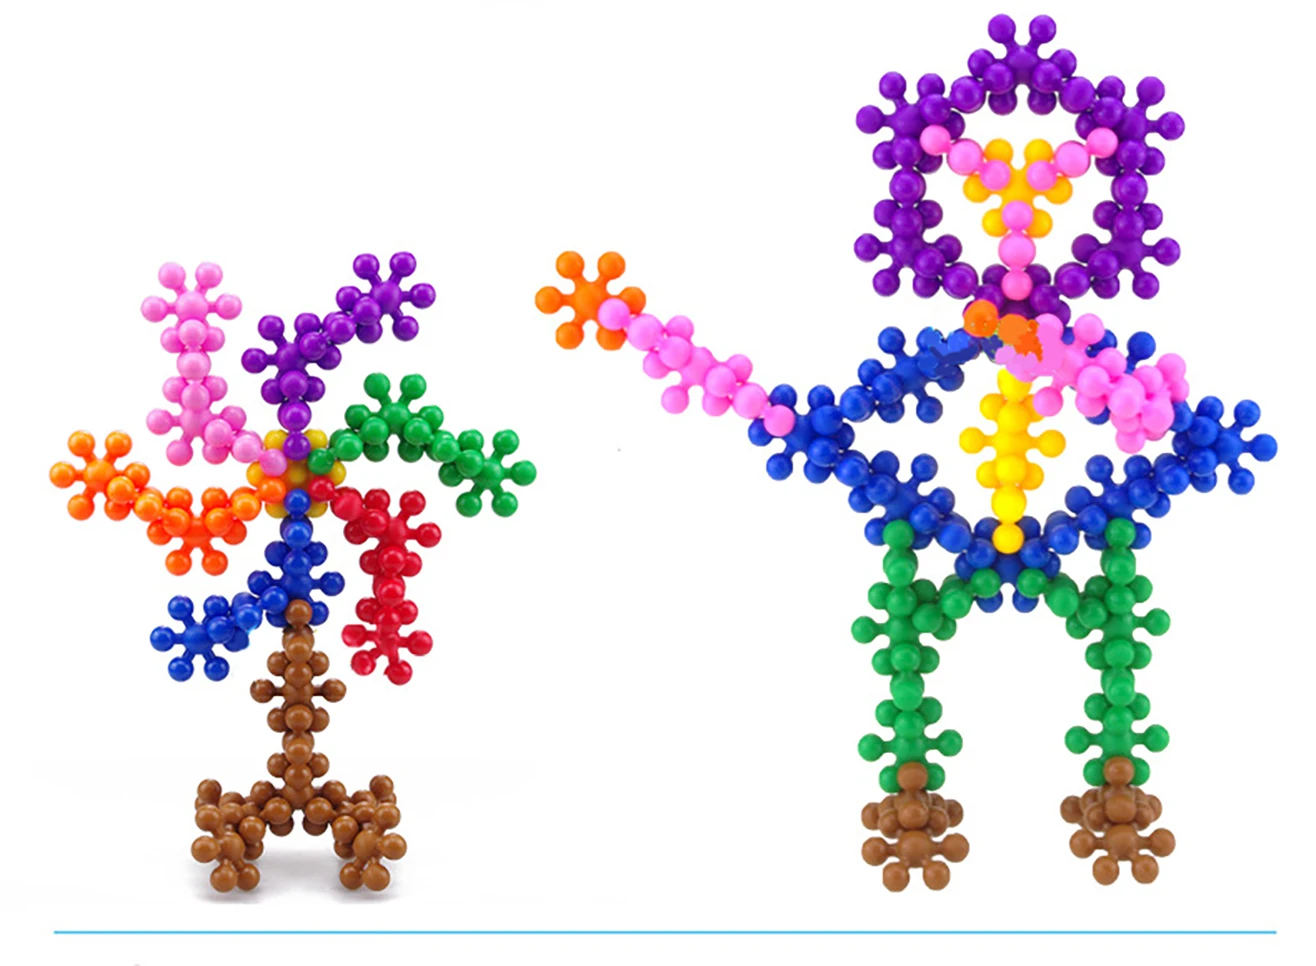 20120300 шт., строительные блоки в виде цветка сливы, игрушки в форме блокировки, популярные креативные Развивающие Игрушки для маленьких детей, игрушки своими руками